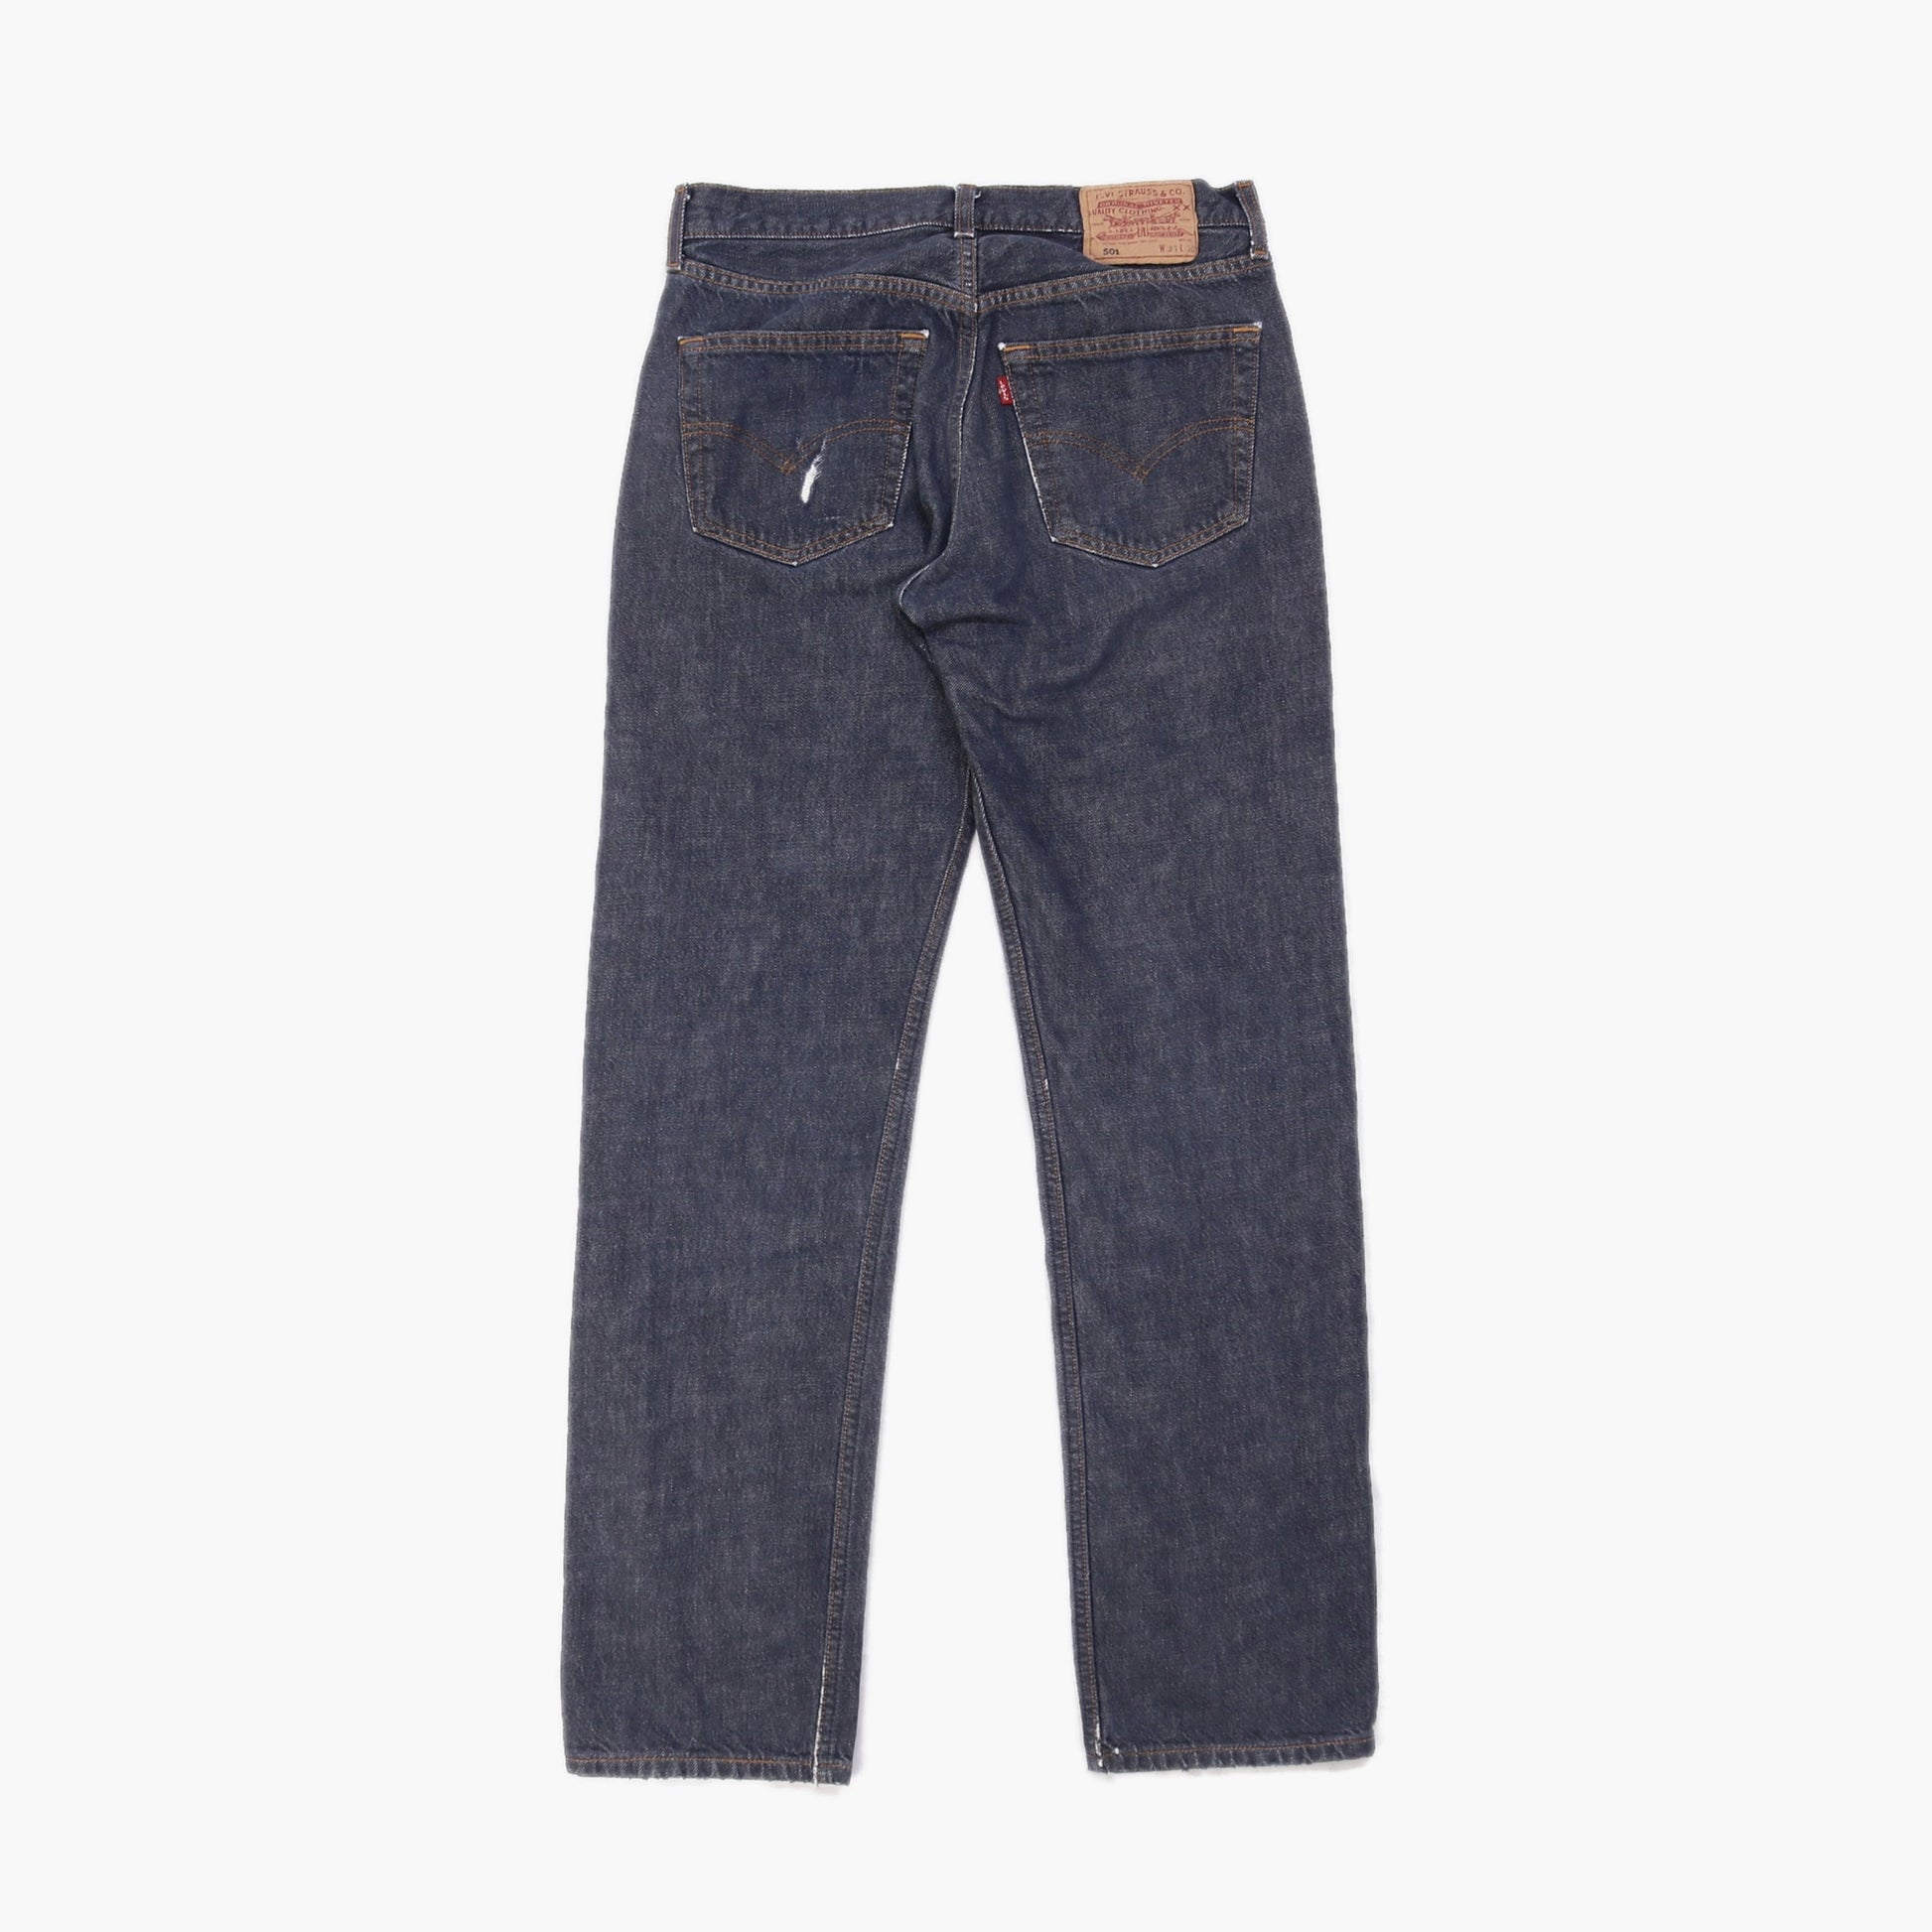 70s Levis 501 Jeans Multiple Sizes